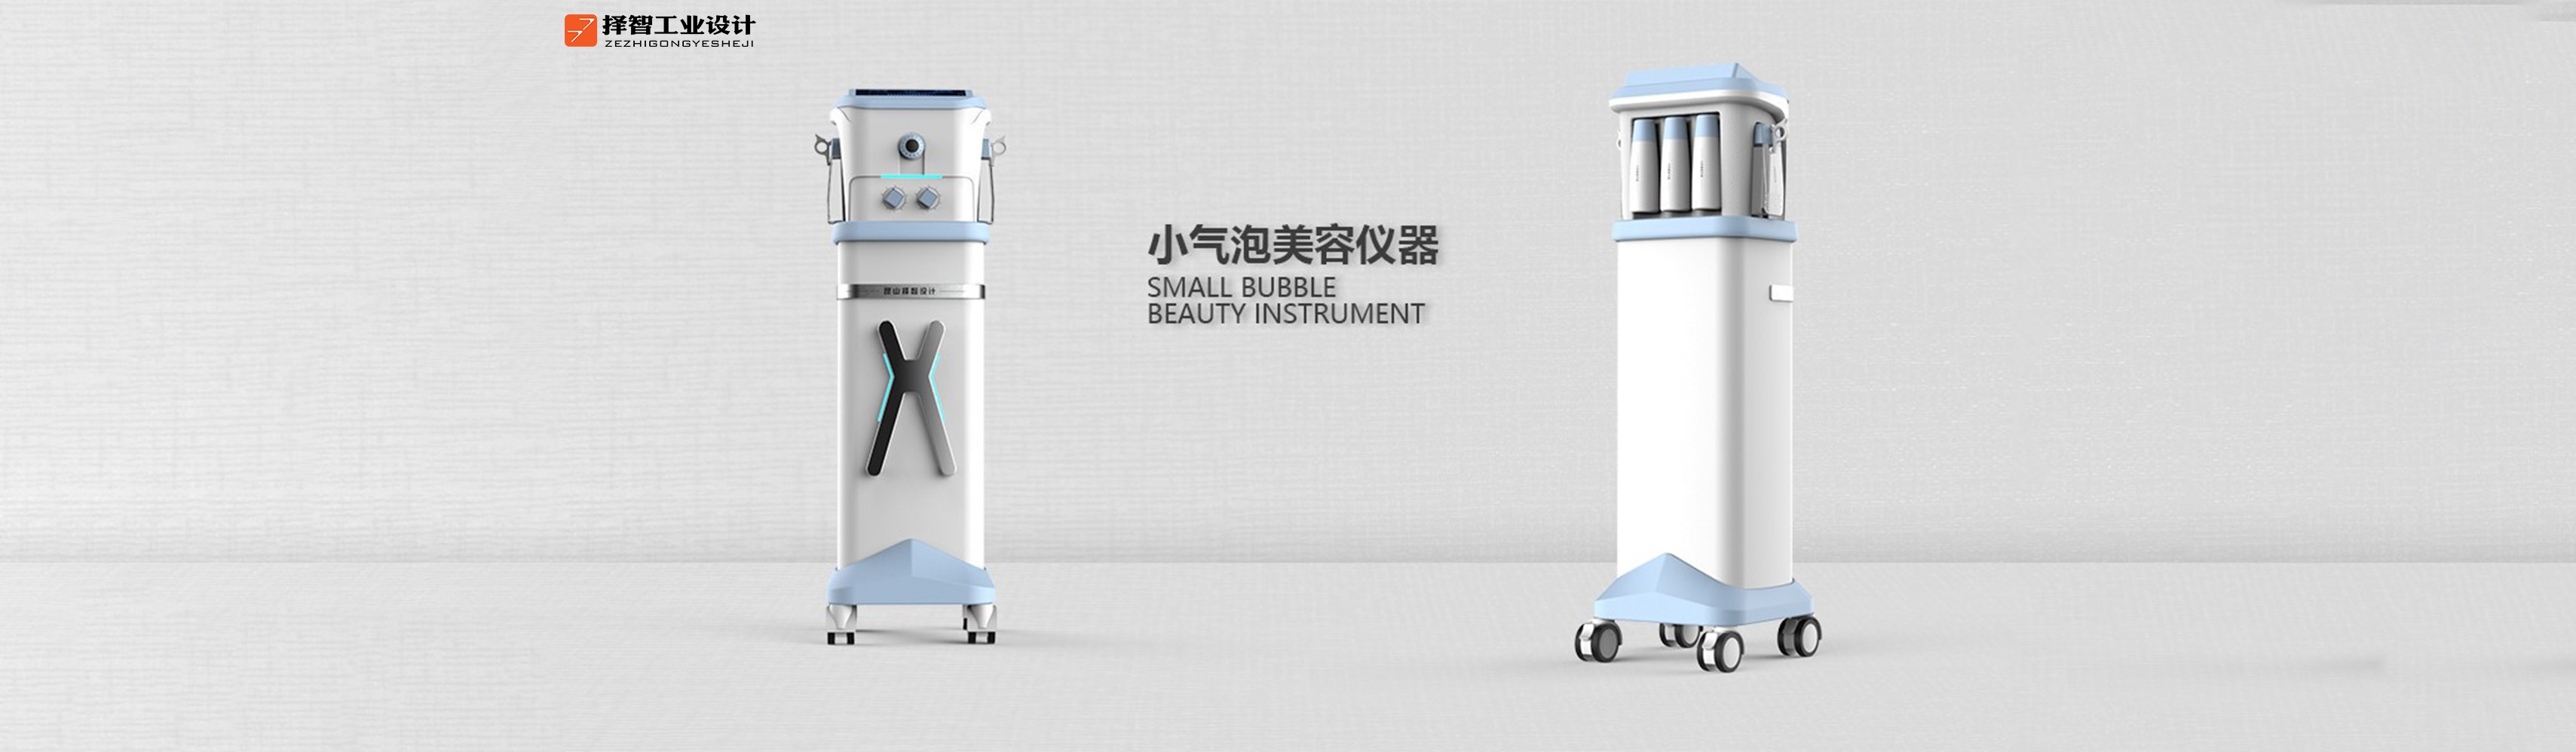 上海苏州产品设计 工业产品外观设计 结构设计 气泡方案美容仪产品设计